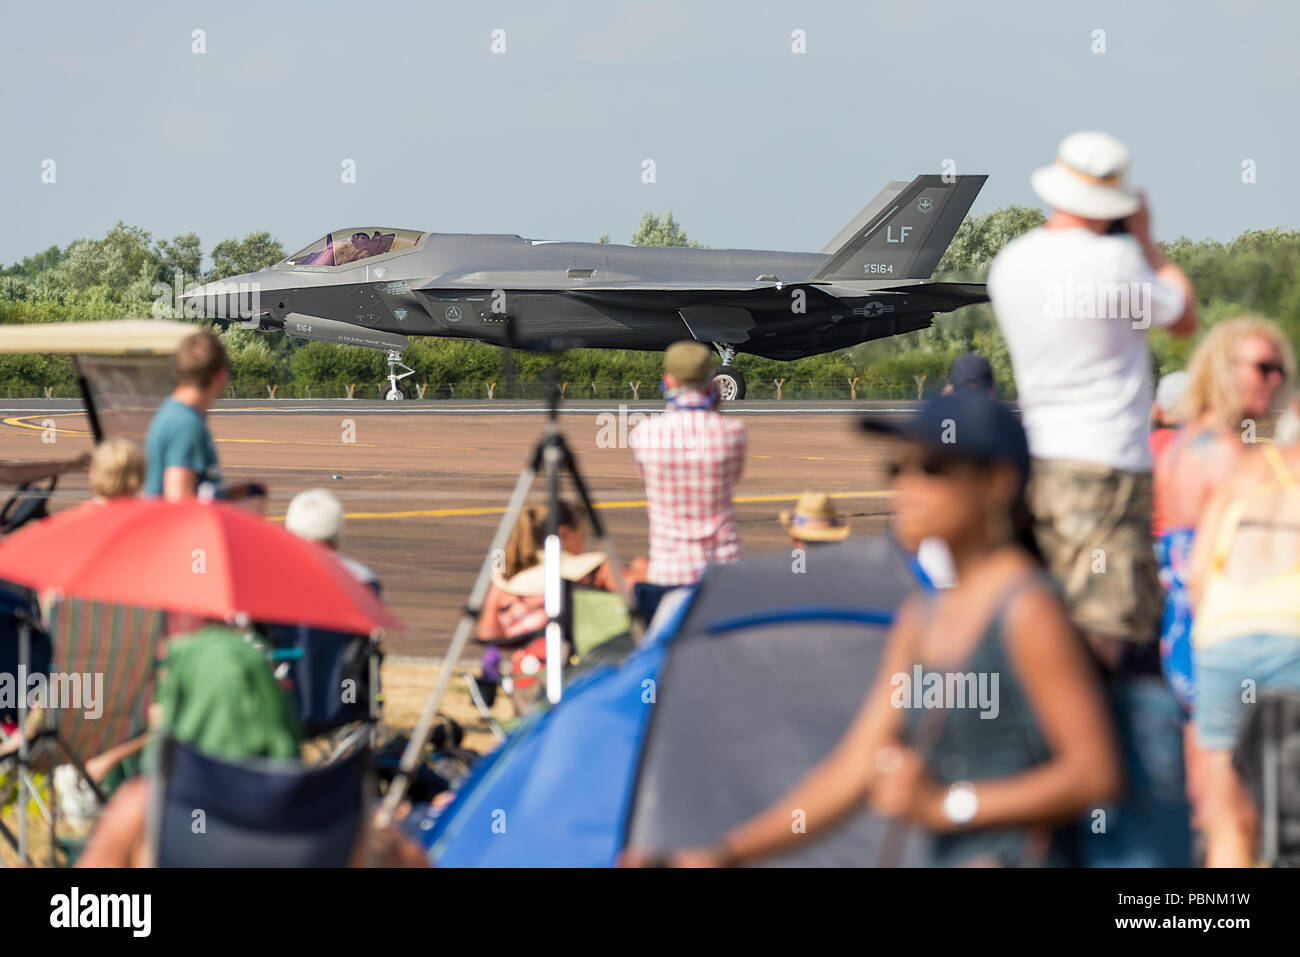 Un Lockheed Martin F-35 Lightning II le roulage sur la piste à RIAT Fairford 2018, UK, avec les spectateurs à la recherche sur. Banque D'Images